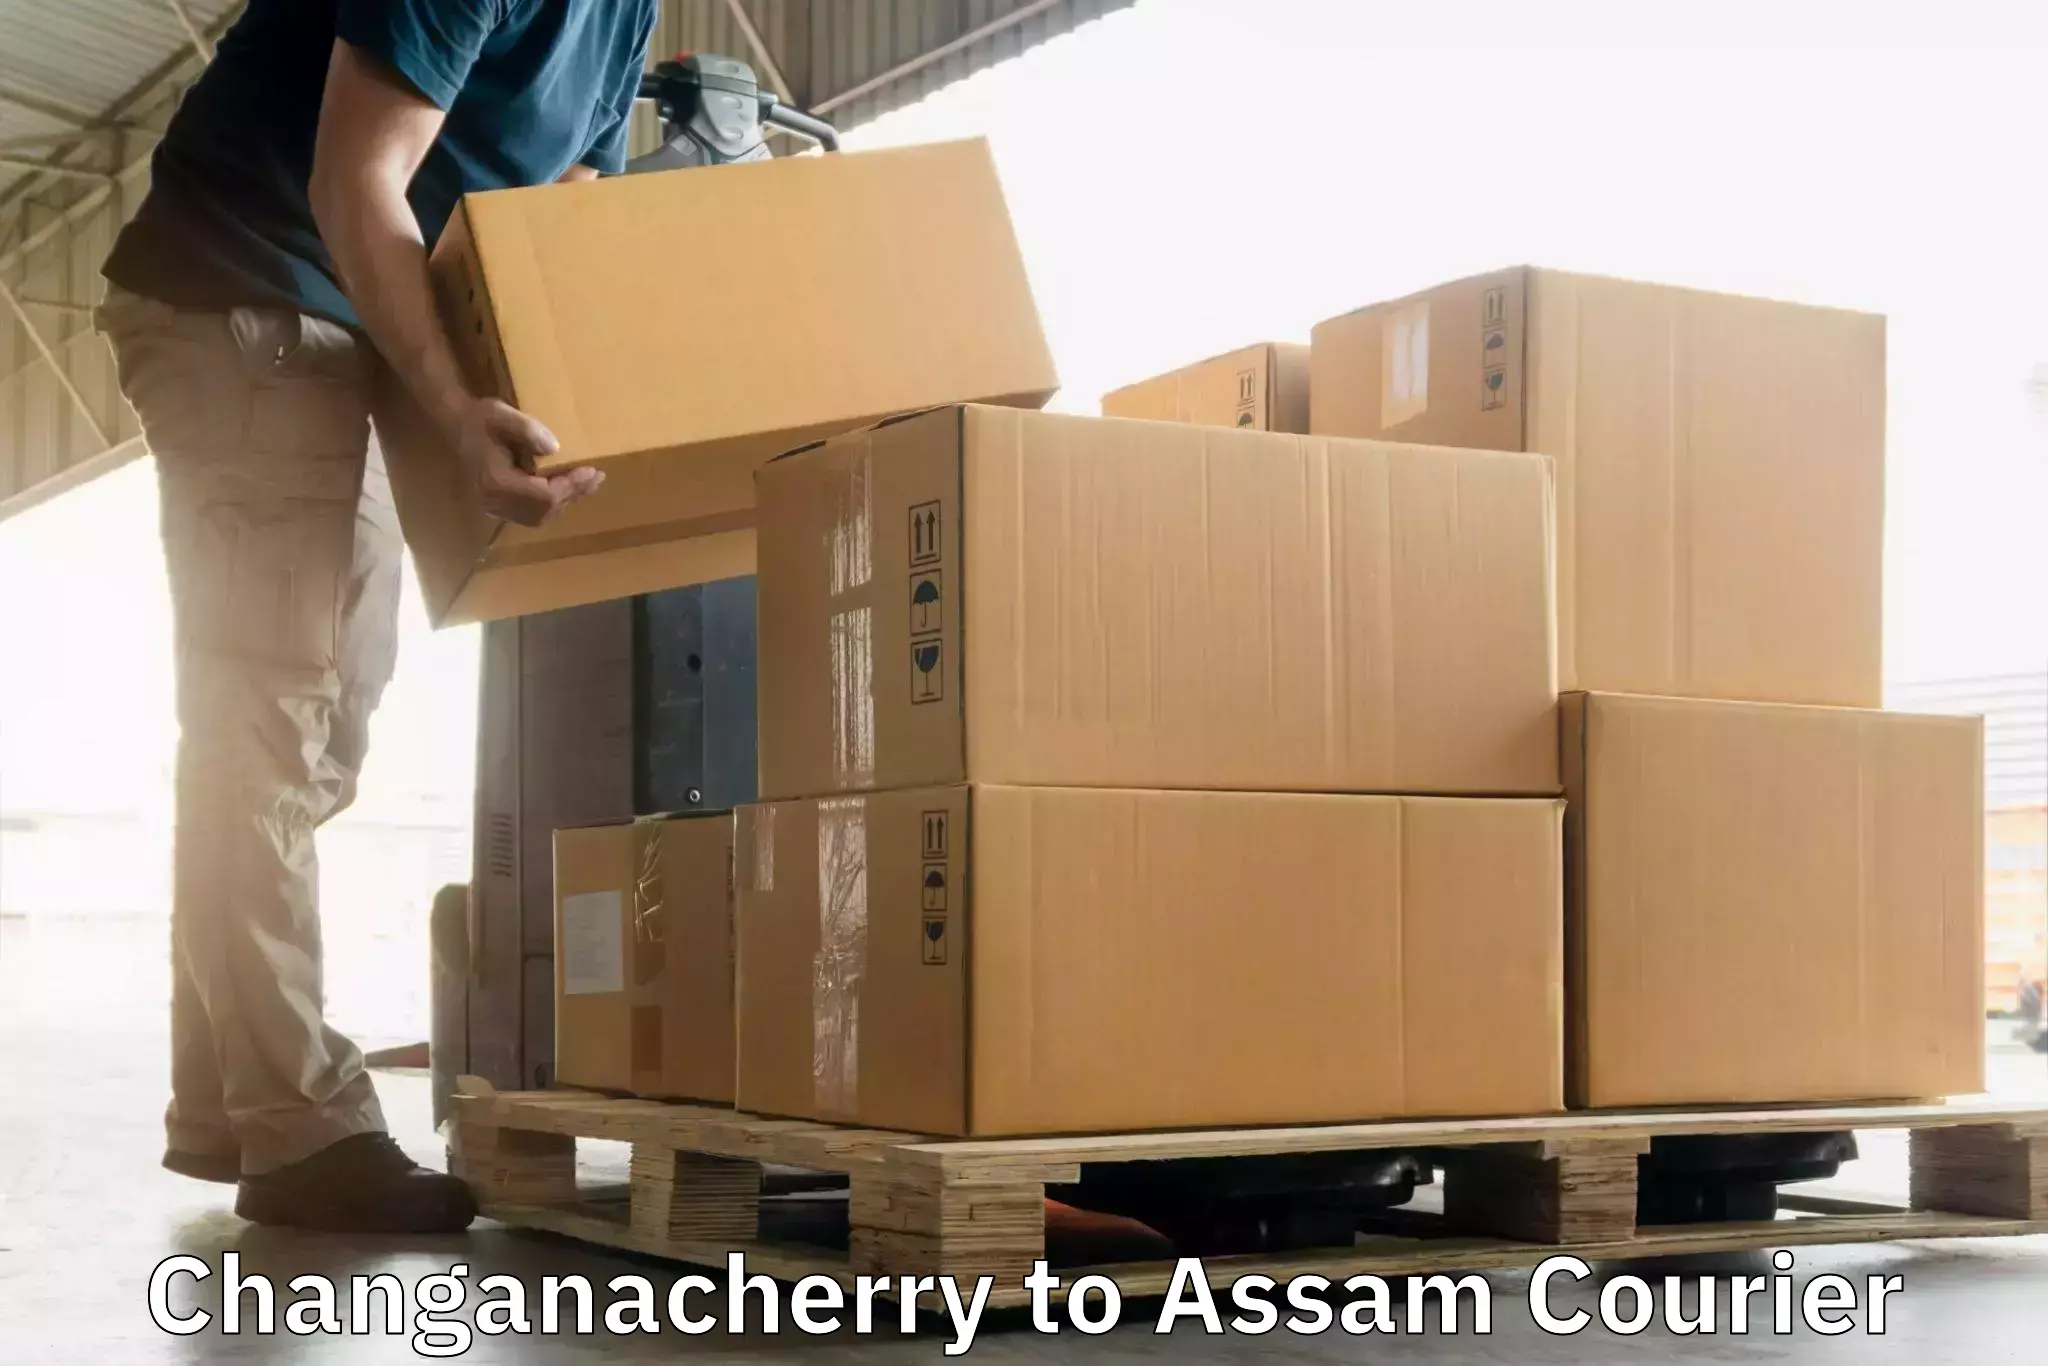 Door-to-door shipment Changanacherry to Lala Assam